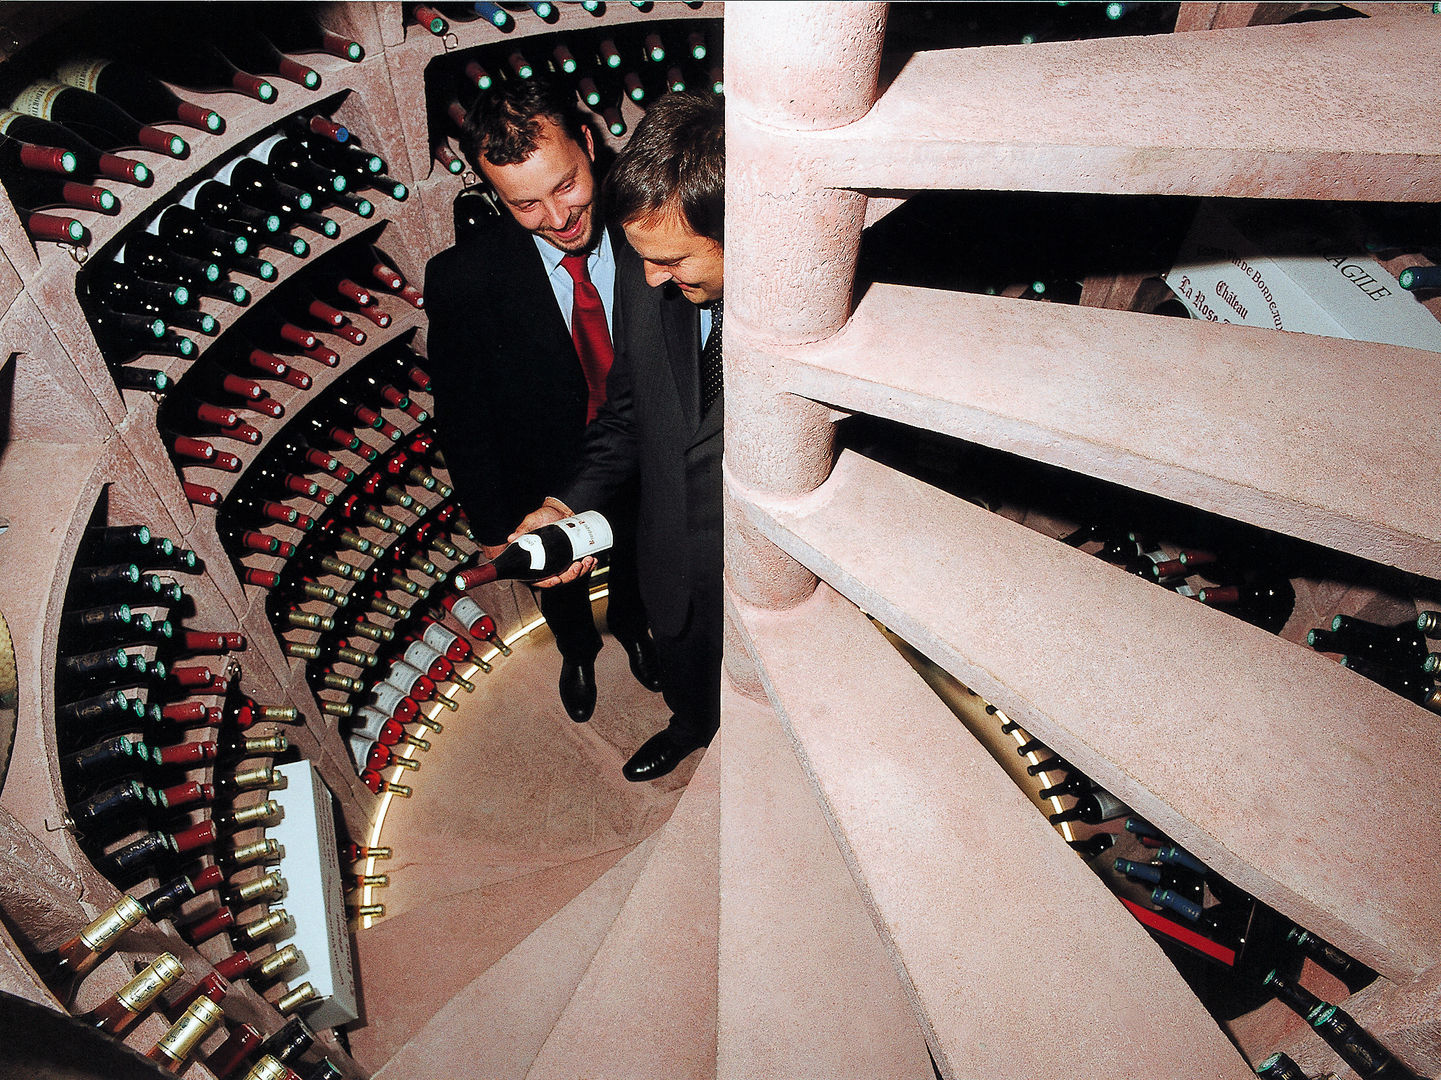 Helicave wijnkelder - ondergronds proeverijtje, Van Dijk Maasland Van Dijk Maasland Wine cellar Wine cellar